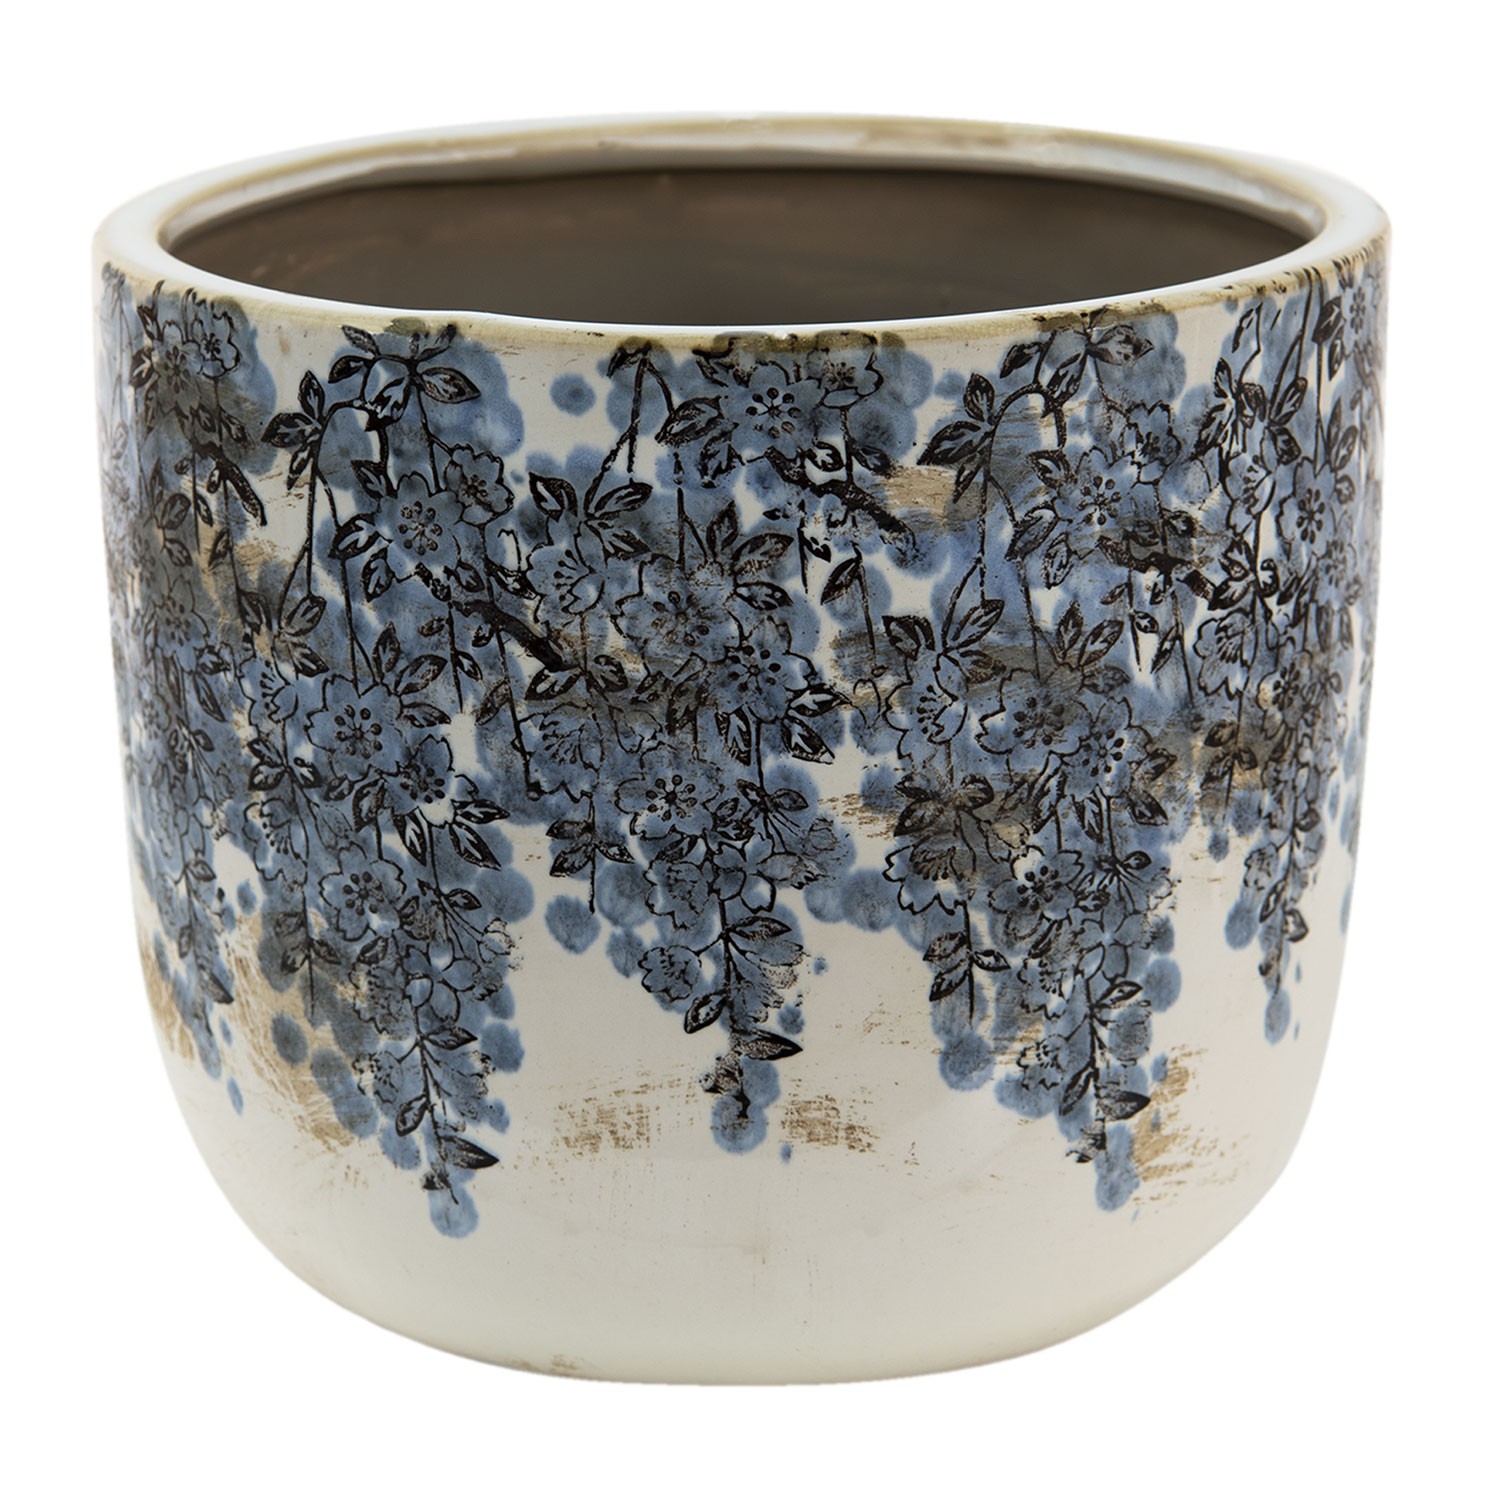 Keramický obal na květináč s modrými květy Maun M - Ø 15*13 cm 6CE1422M